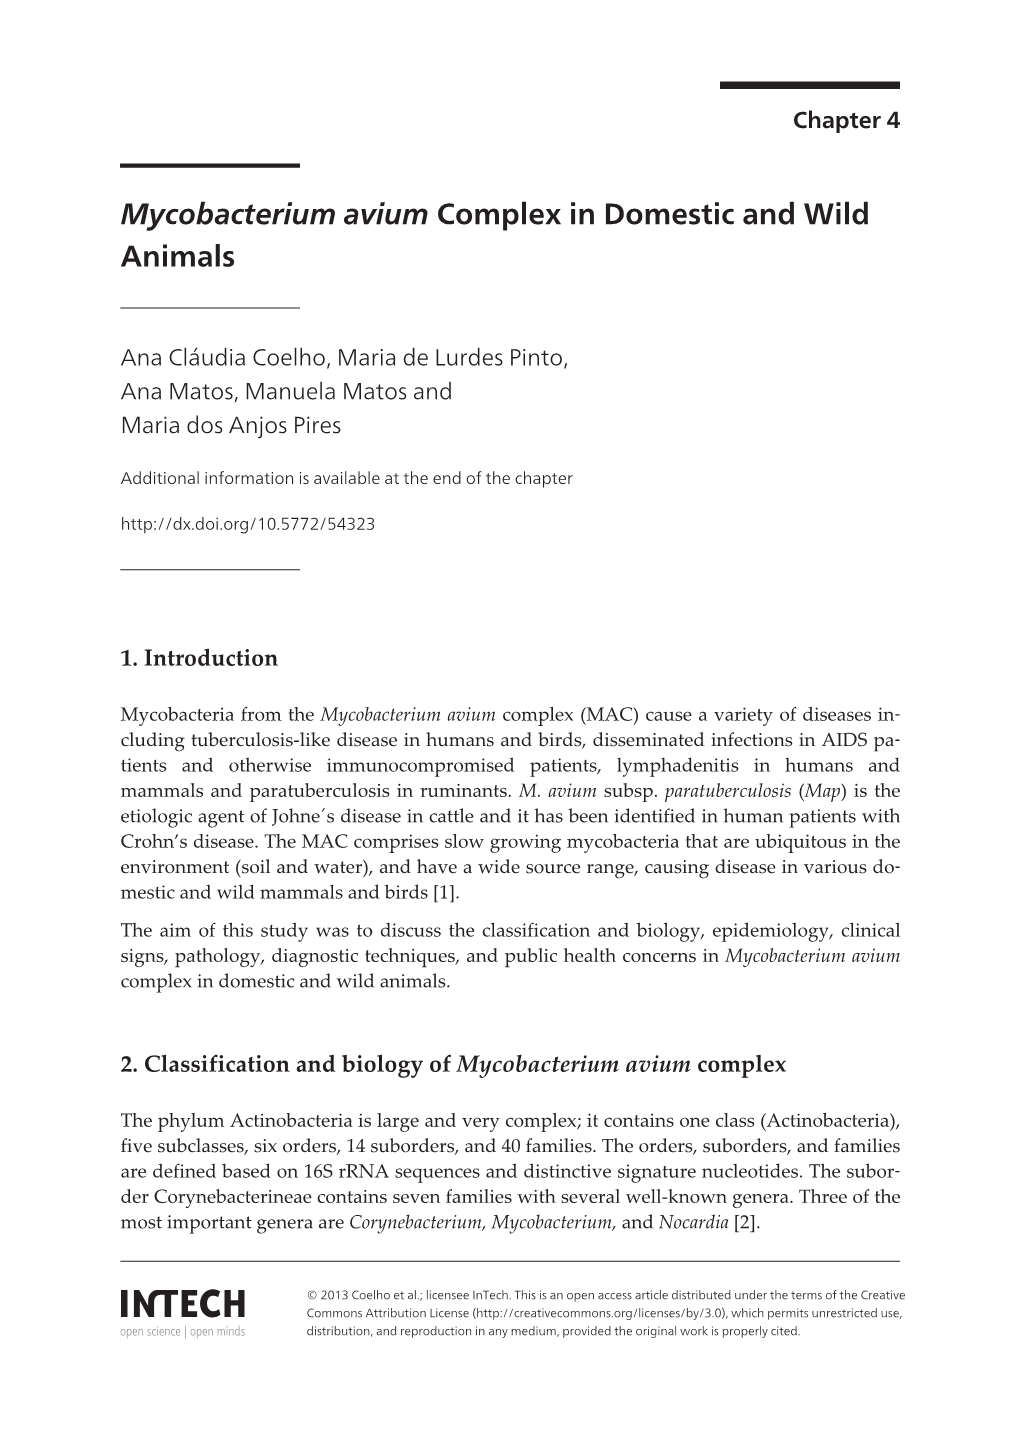 Mycobacterium Avium Complex in Domestic and Wild Animals